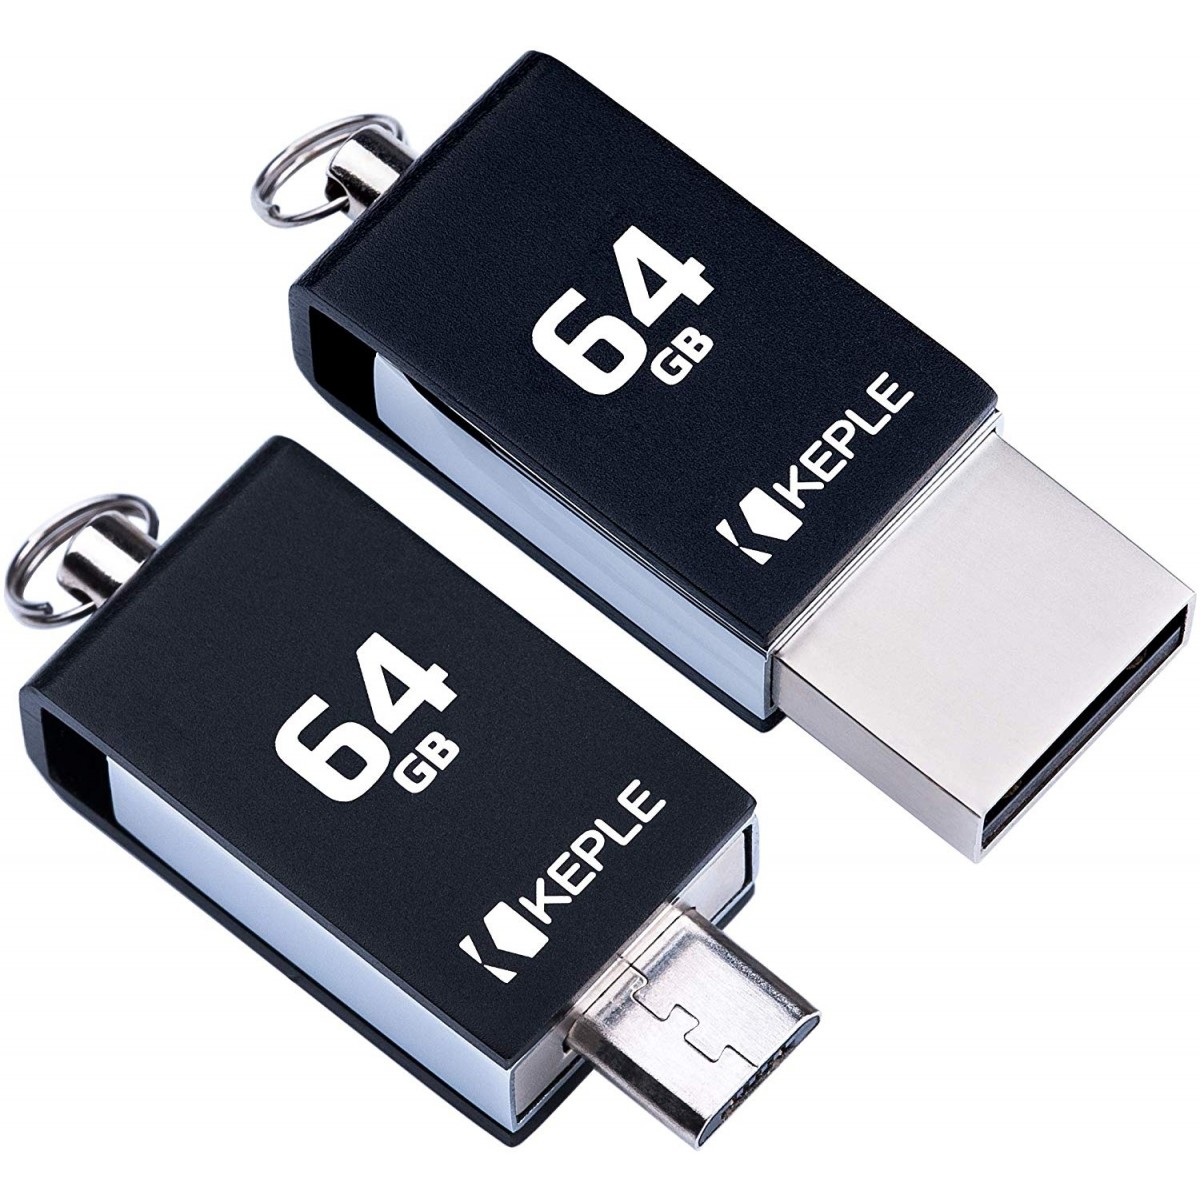 Talje Valnød Rubin 64GB USB Stick OTG to Micro USB 2 in 1 Flash Drive Memory Stick 2.0  Compatible